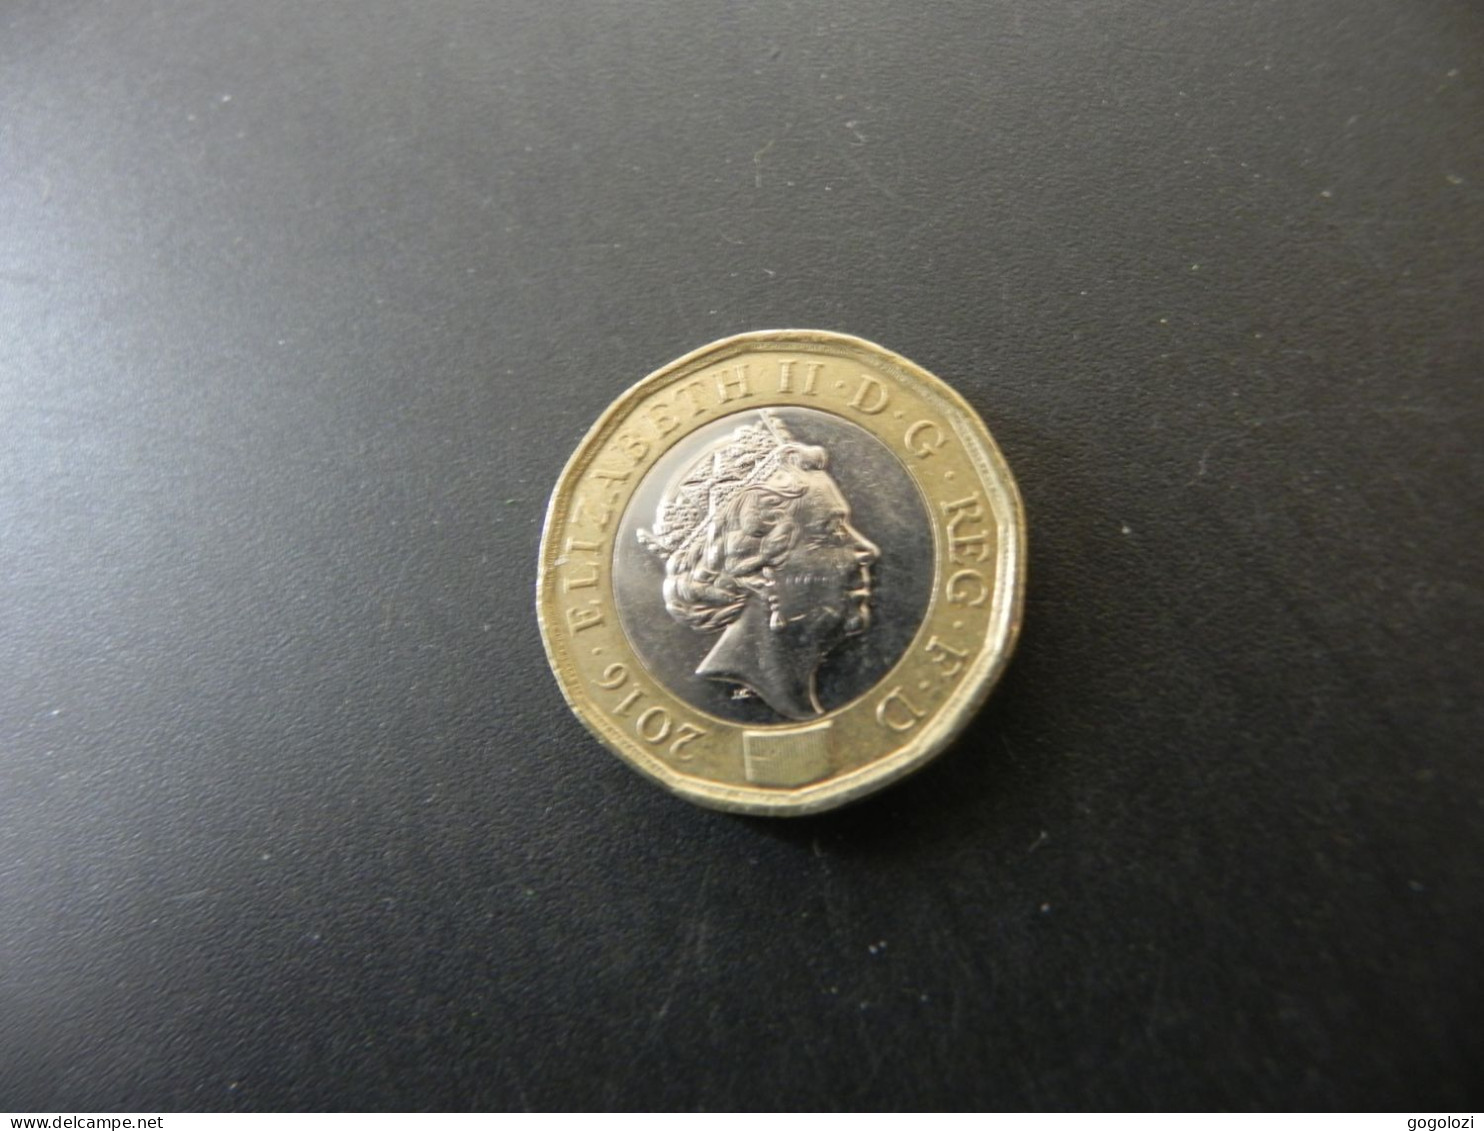 Great Britain 1 Pound 2016 - 1 Pond